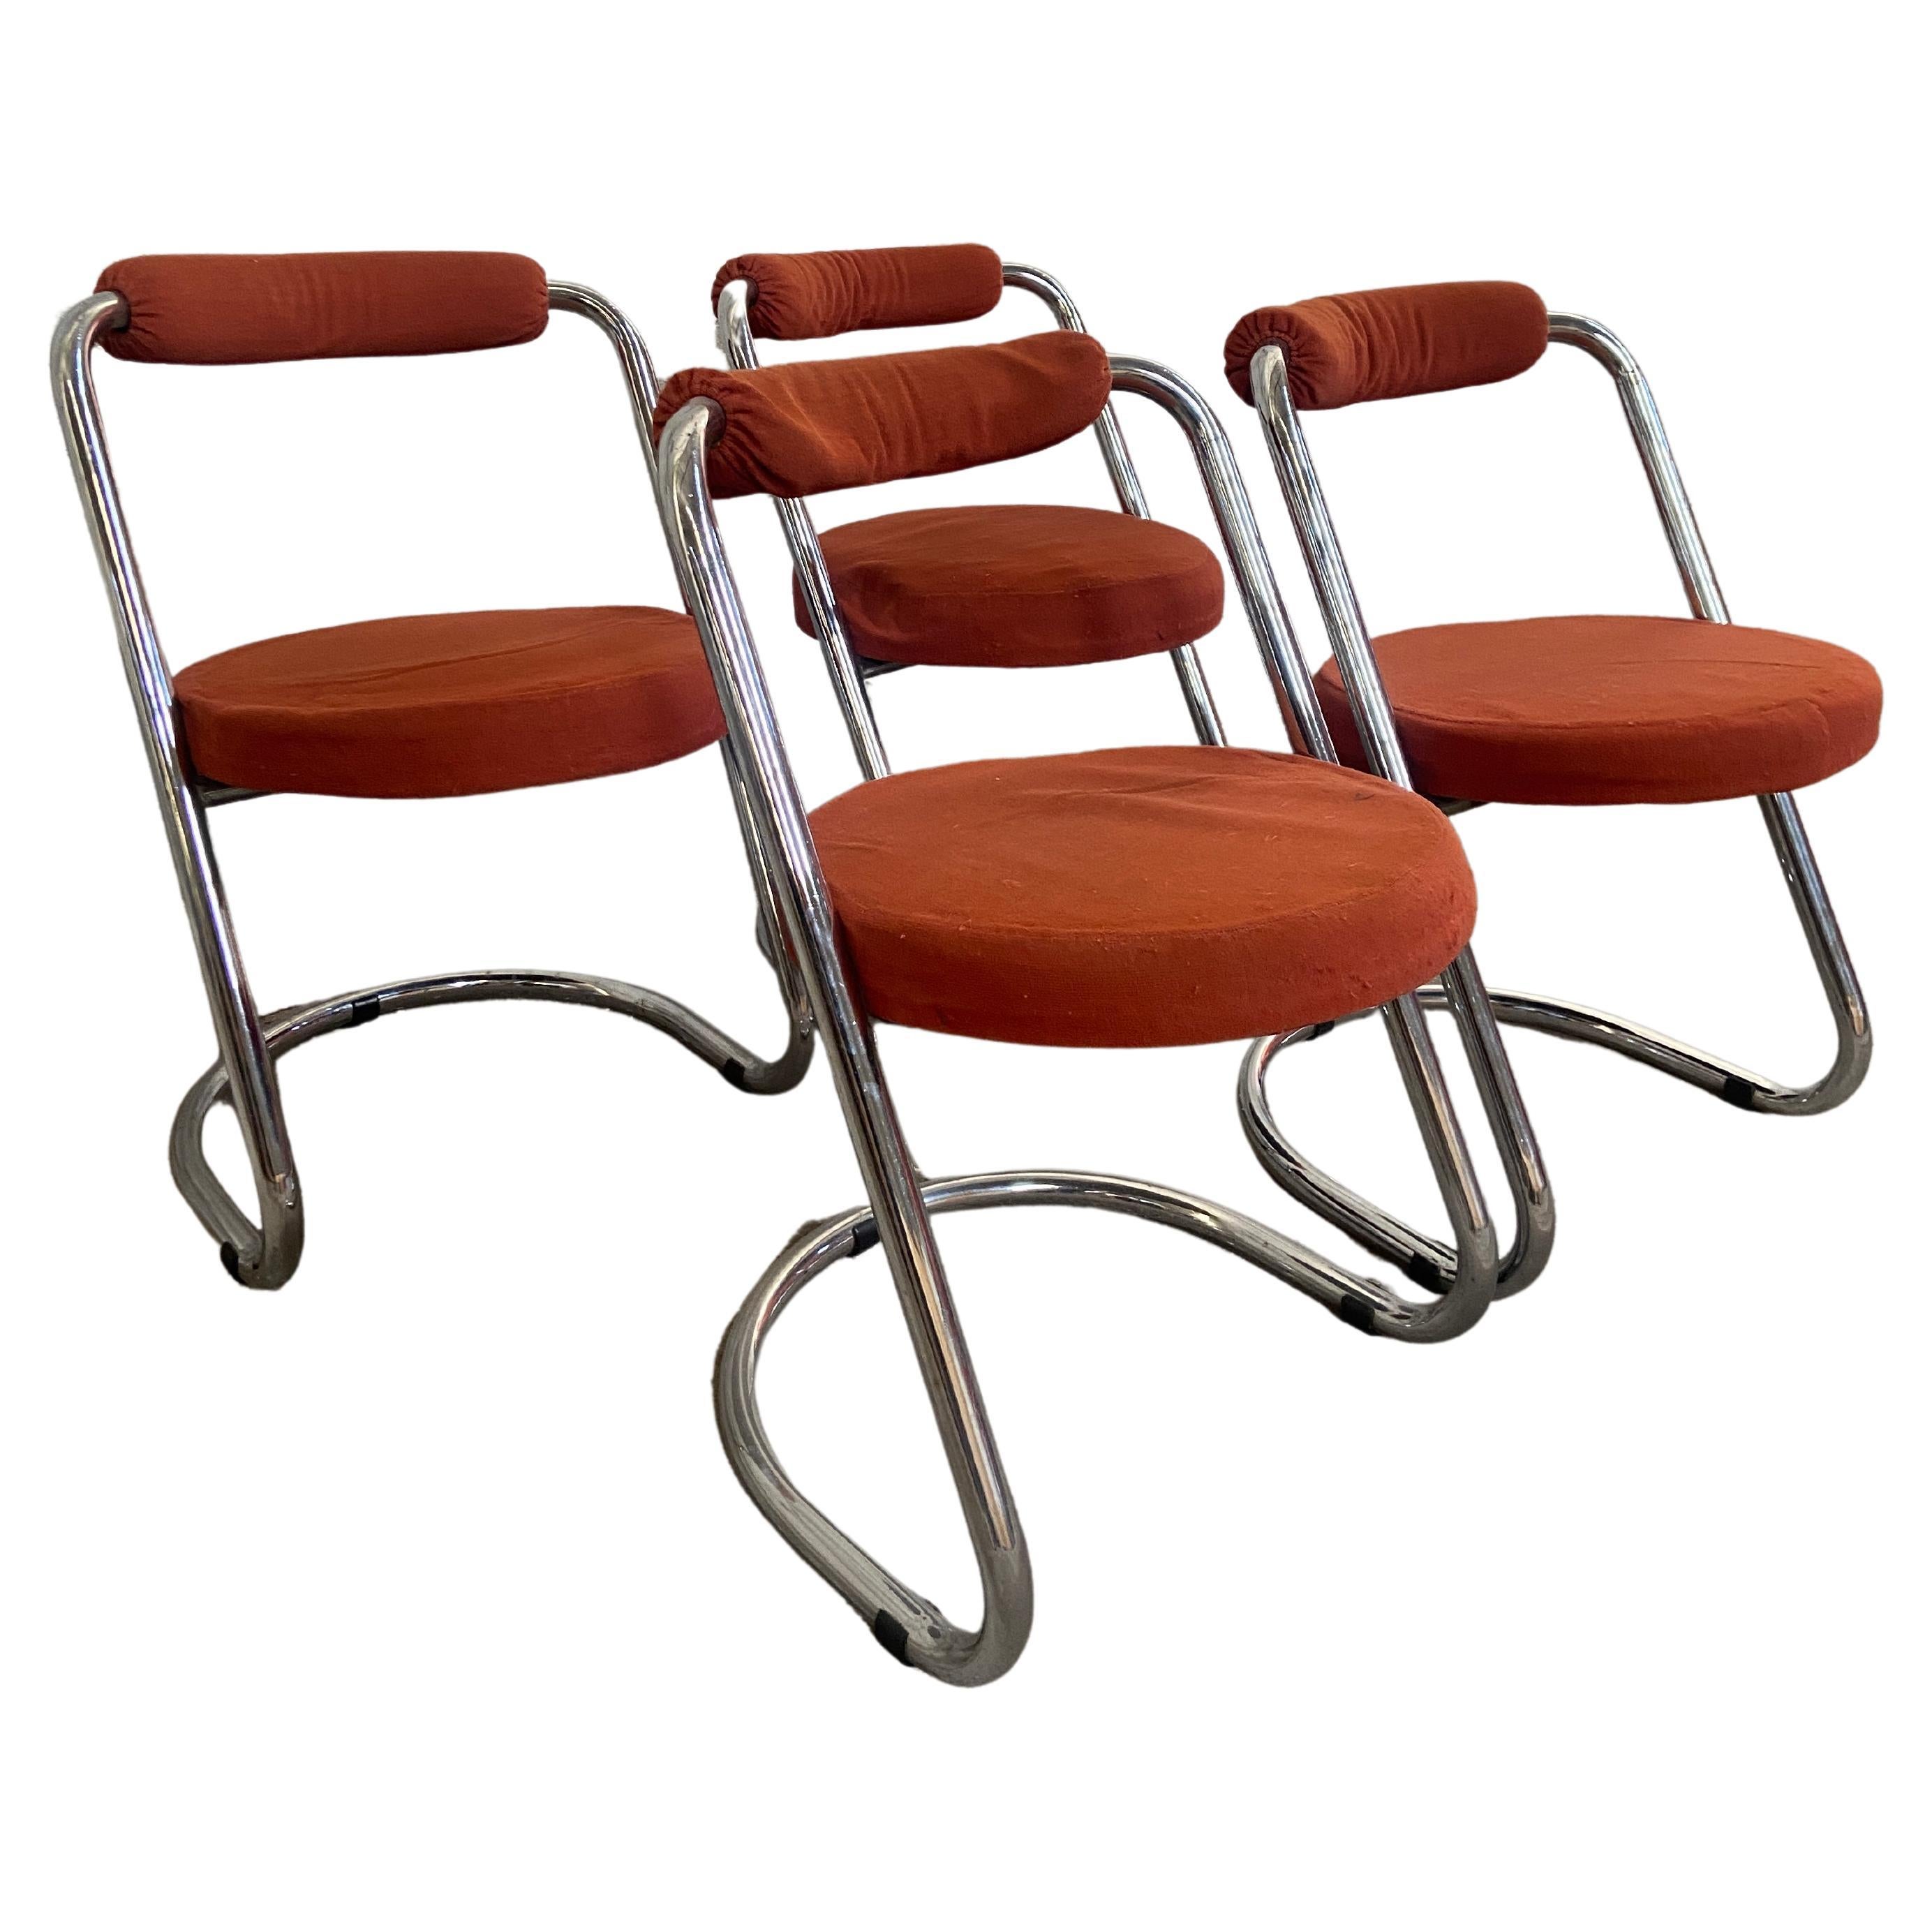 Ensemble italien moderne du milieu du siècle dernier de 4 chaises chromées Giotto Stoppino des années 1970